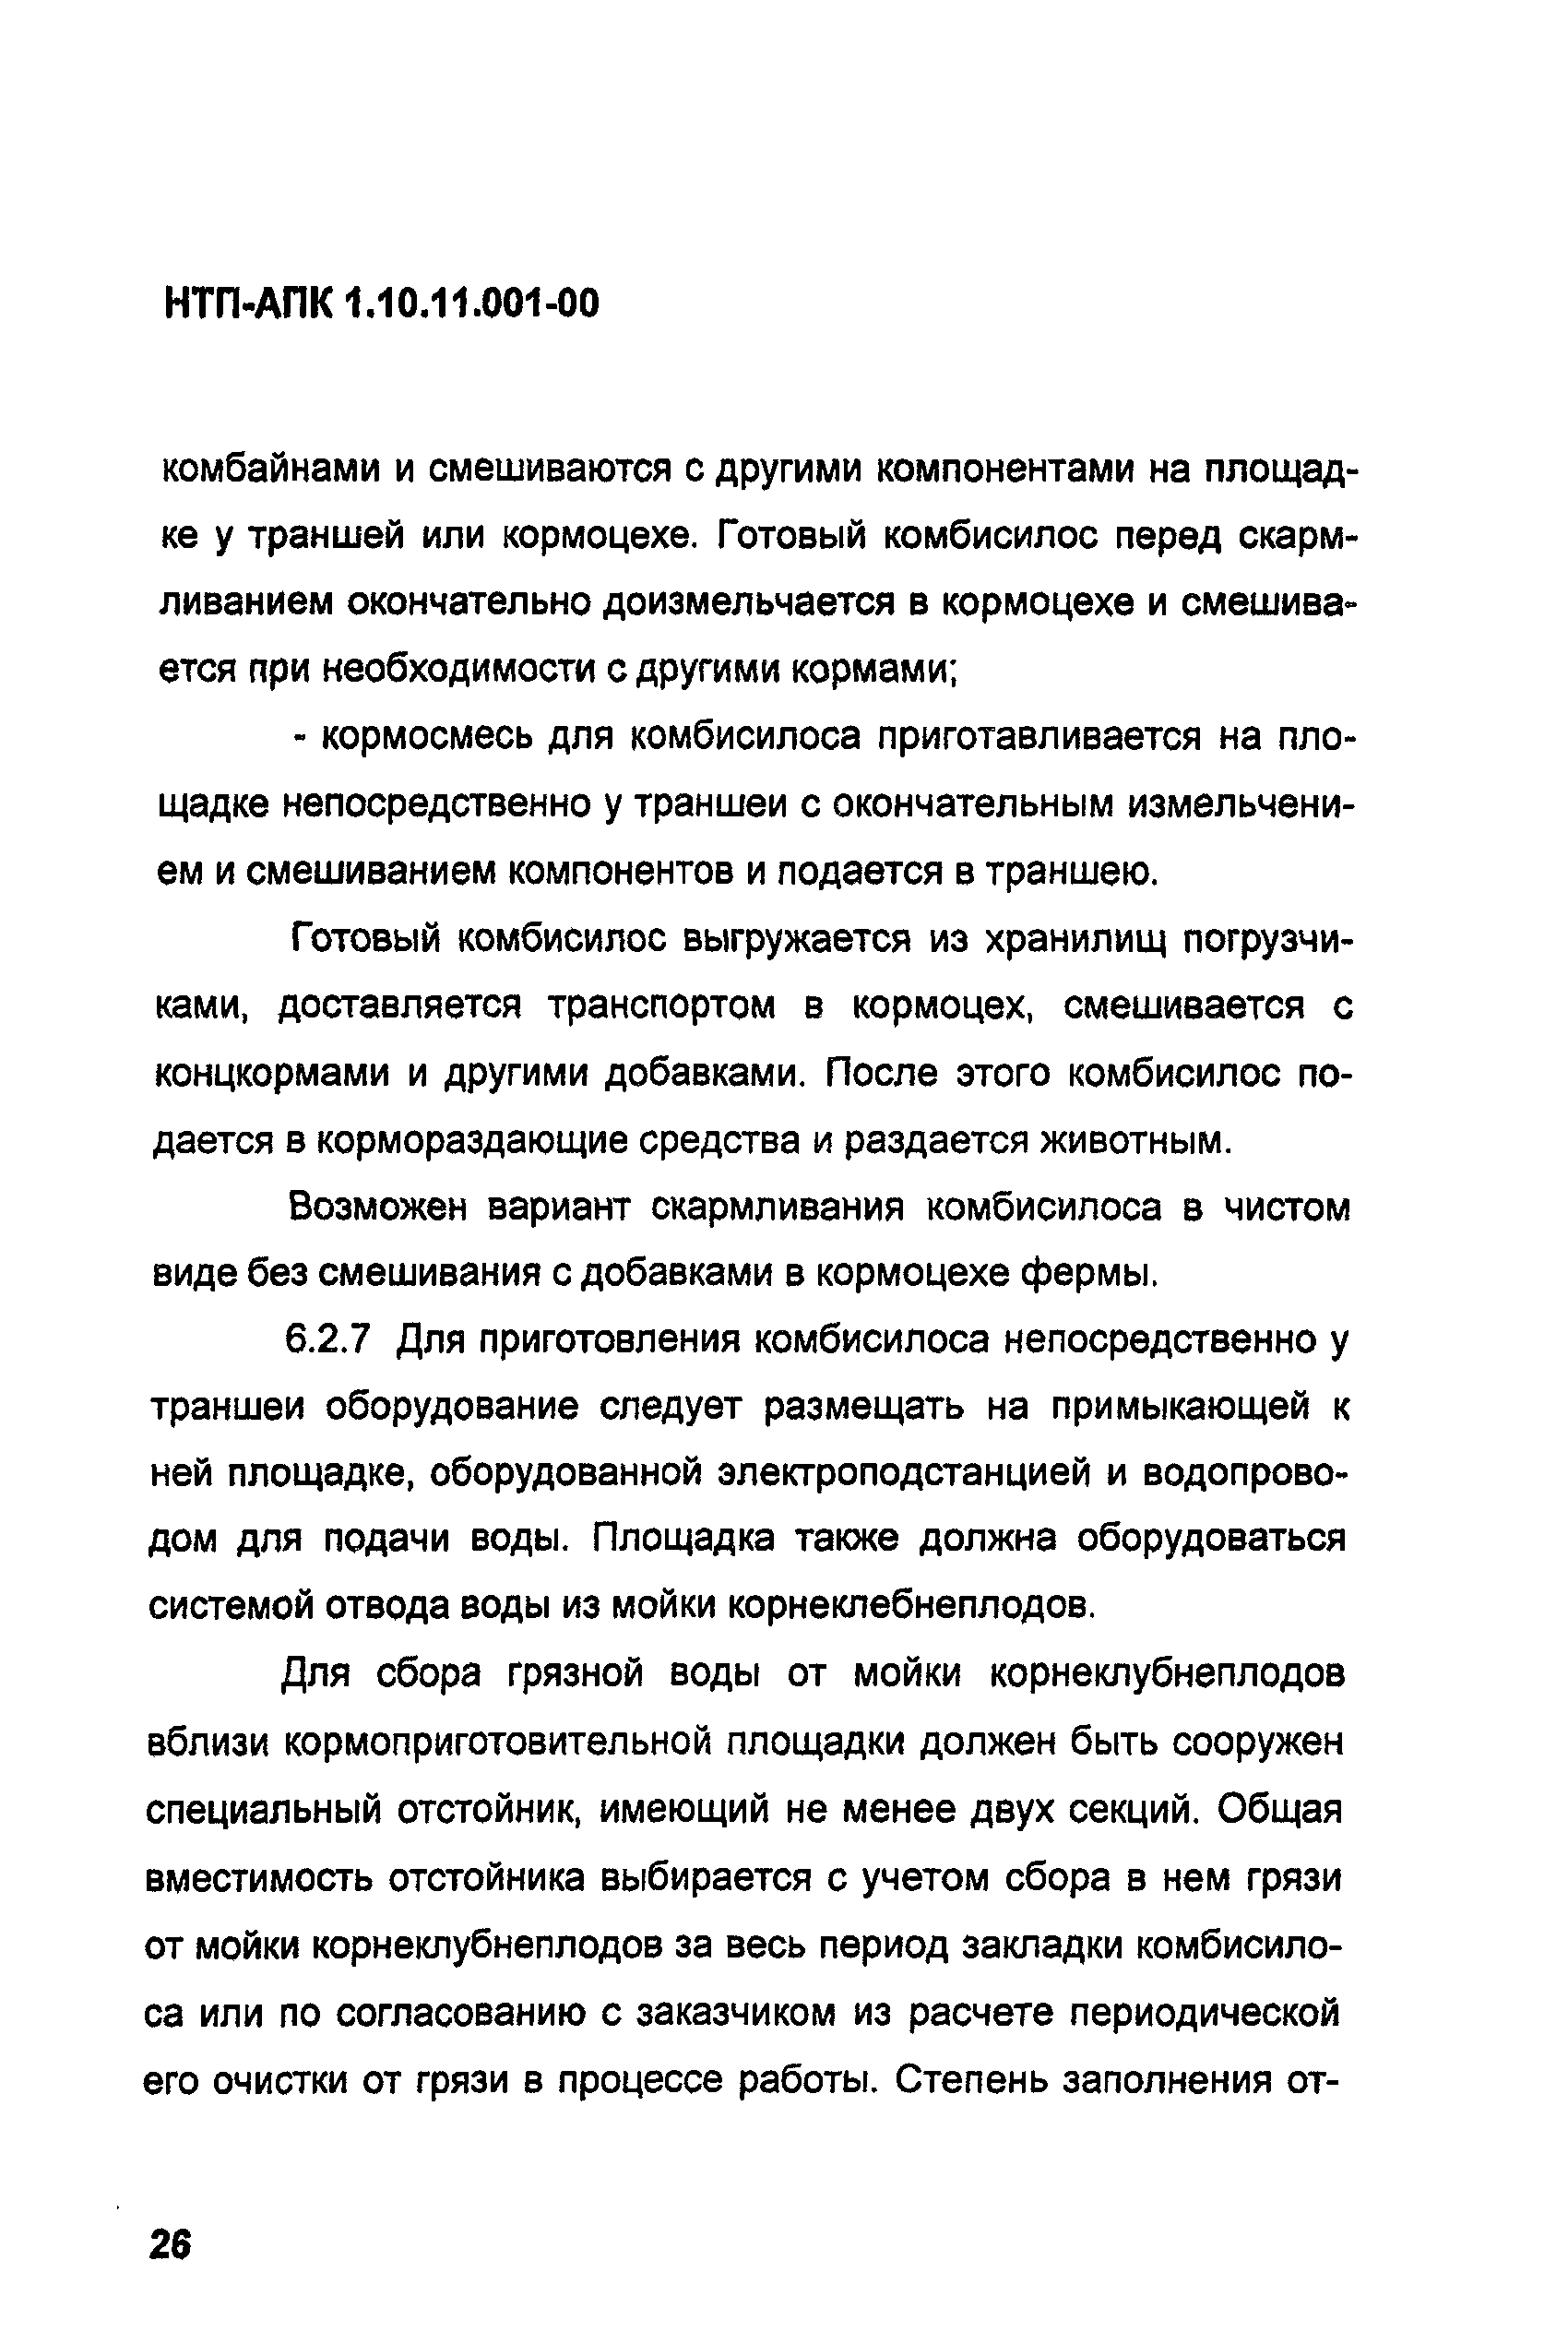 НТП-АПК 1.10.11.001-00